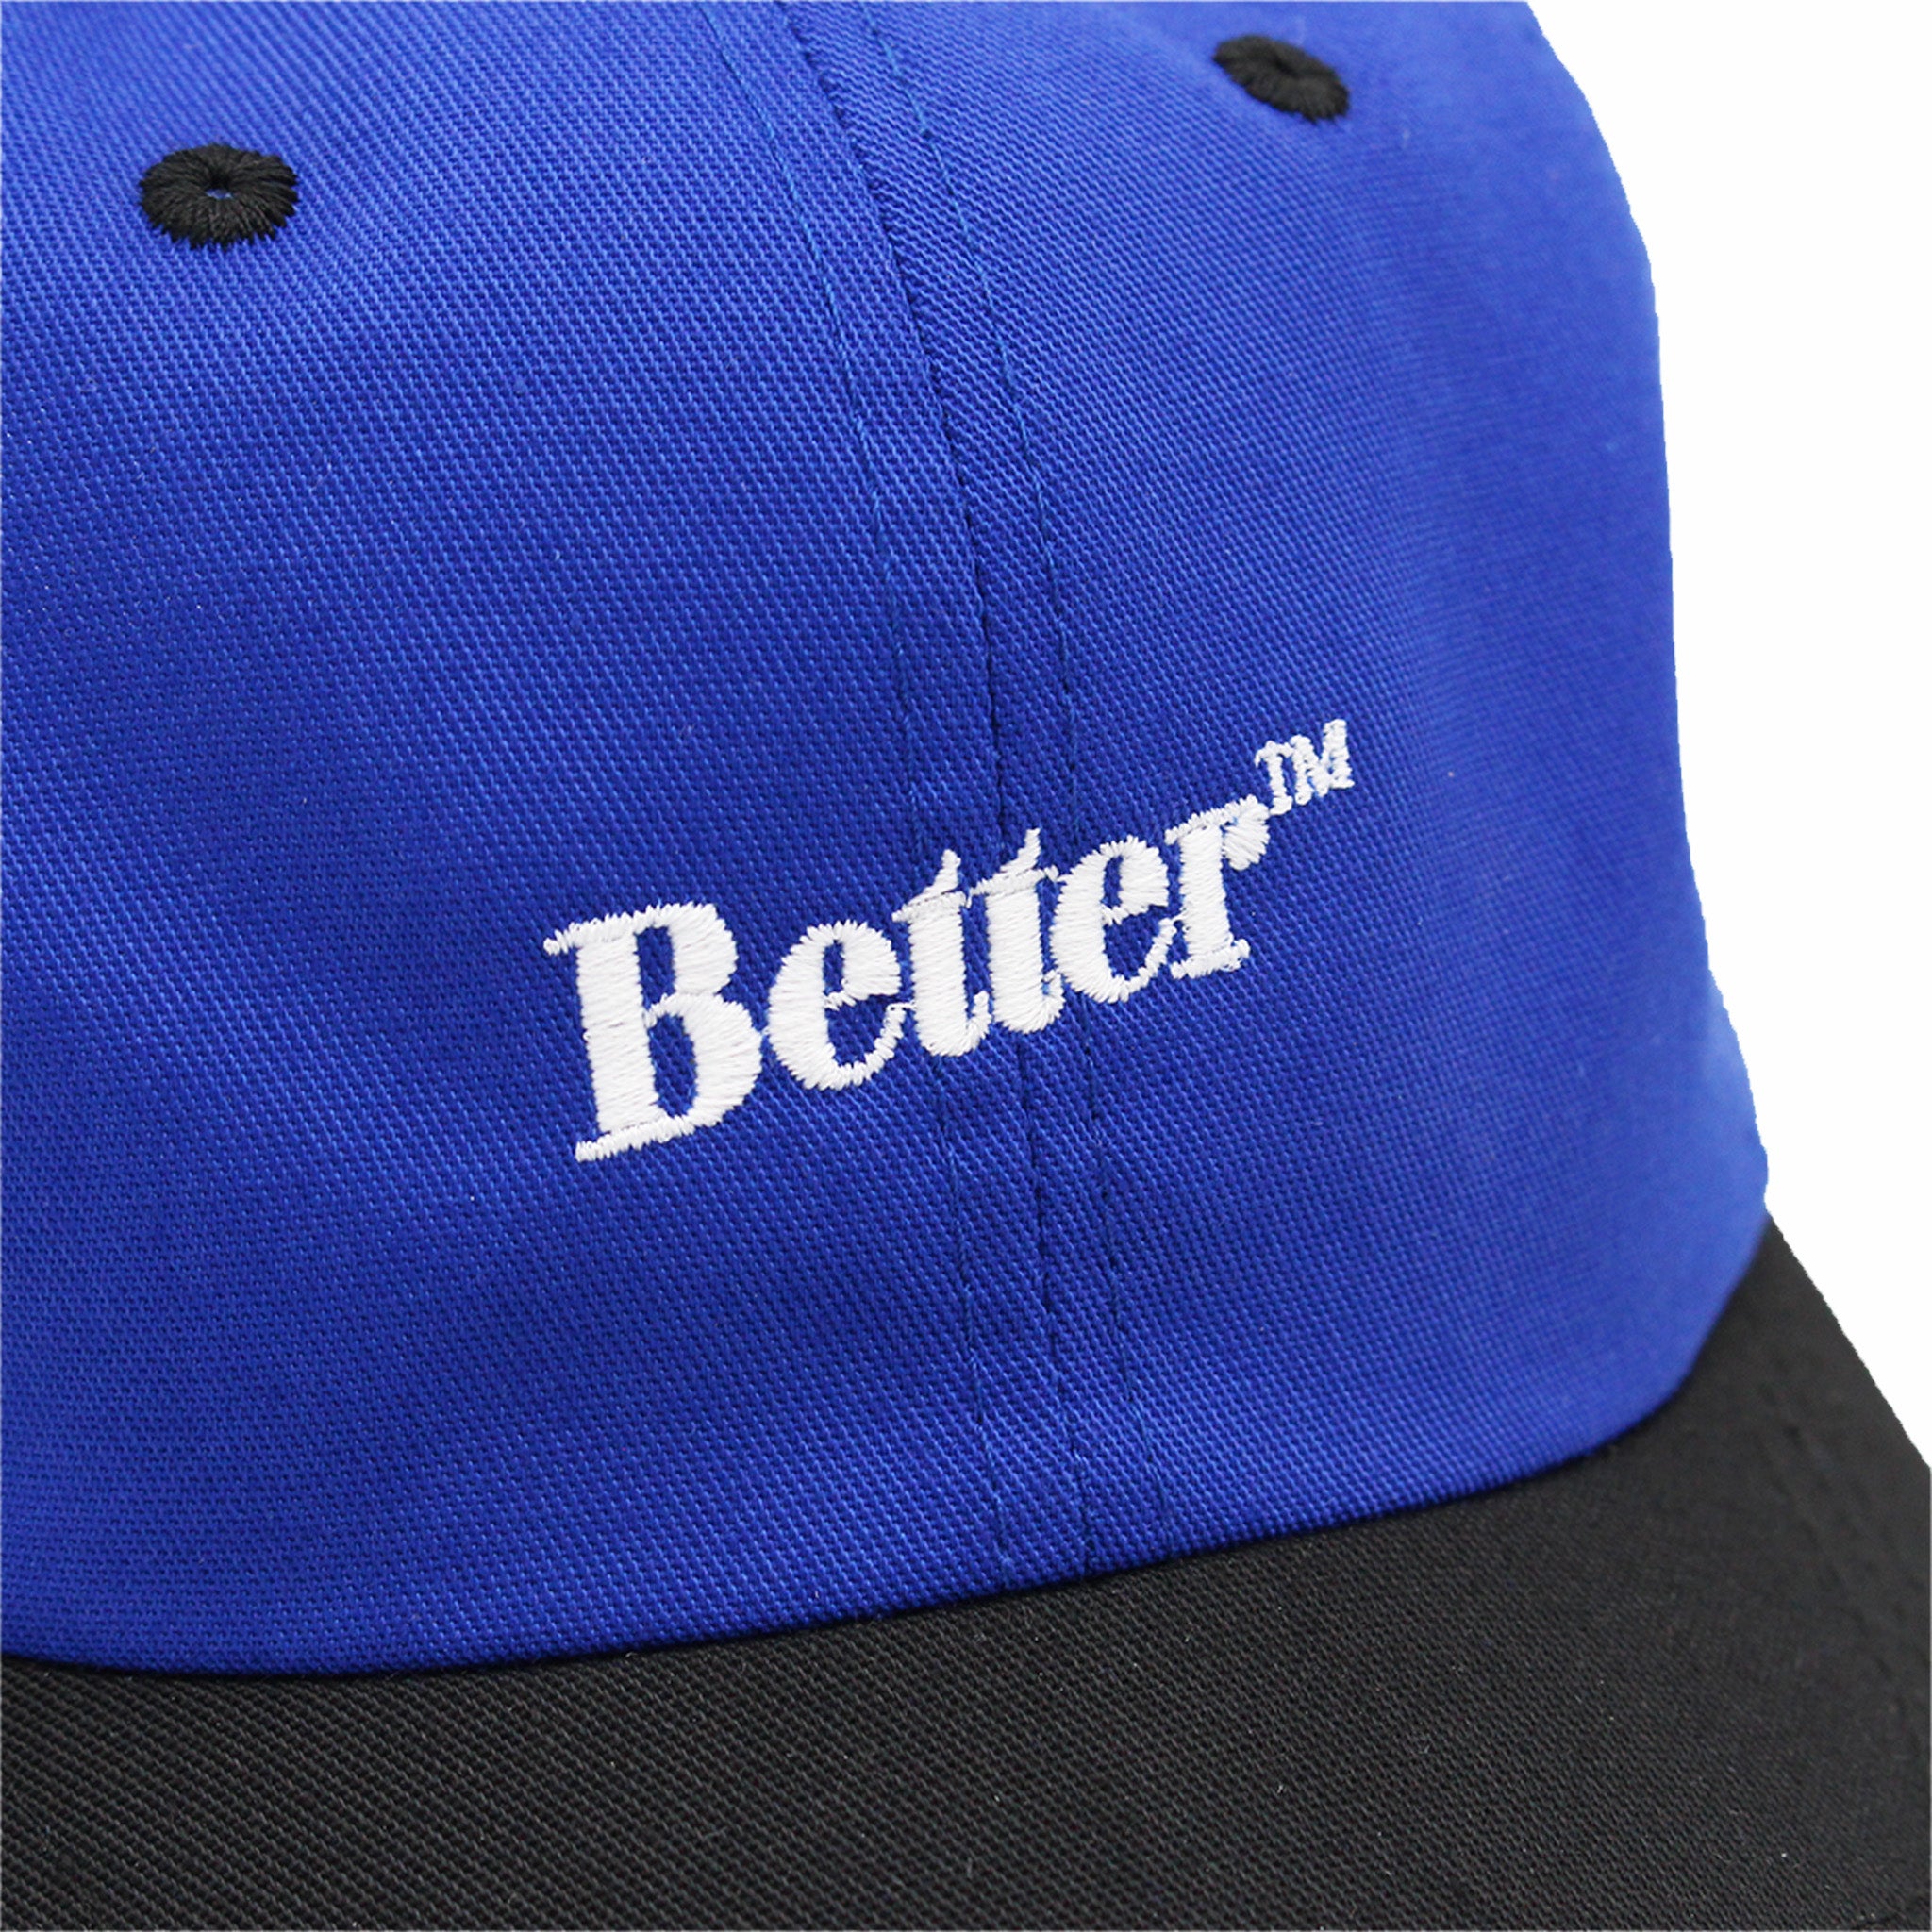 Better™ Gift Shop &quot;Fly Logo&quot; Adjustable Hat (Blue/Black) - August Shop